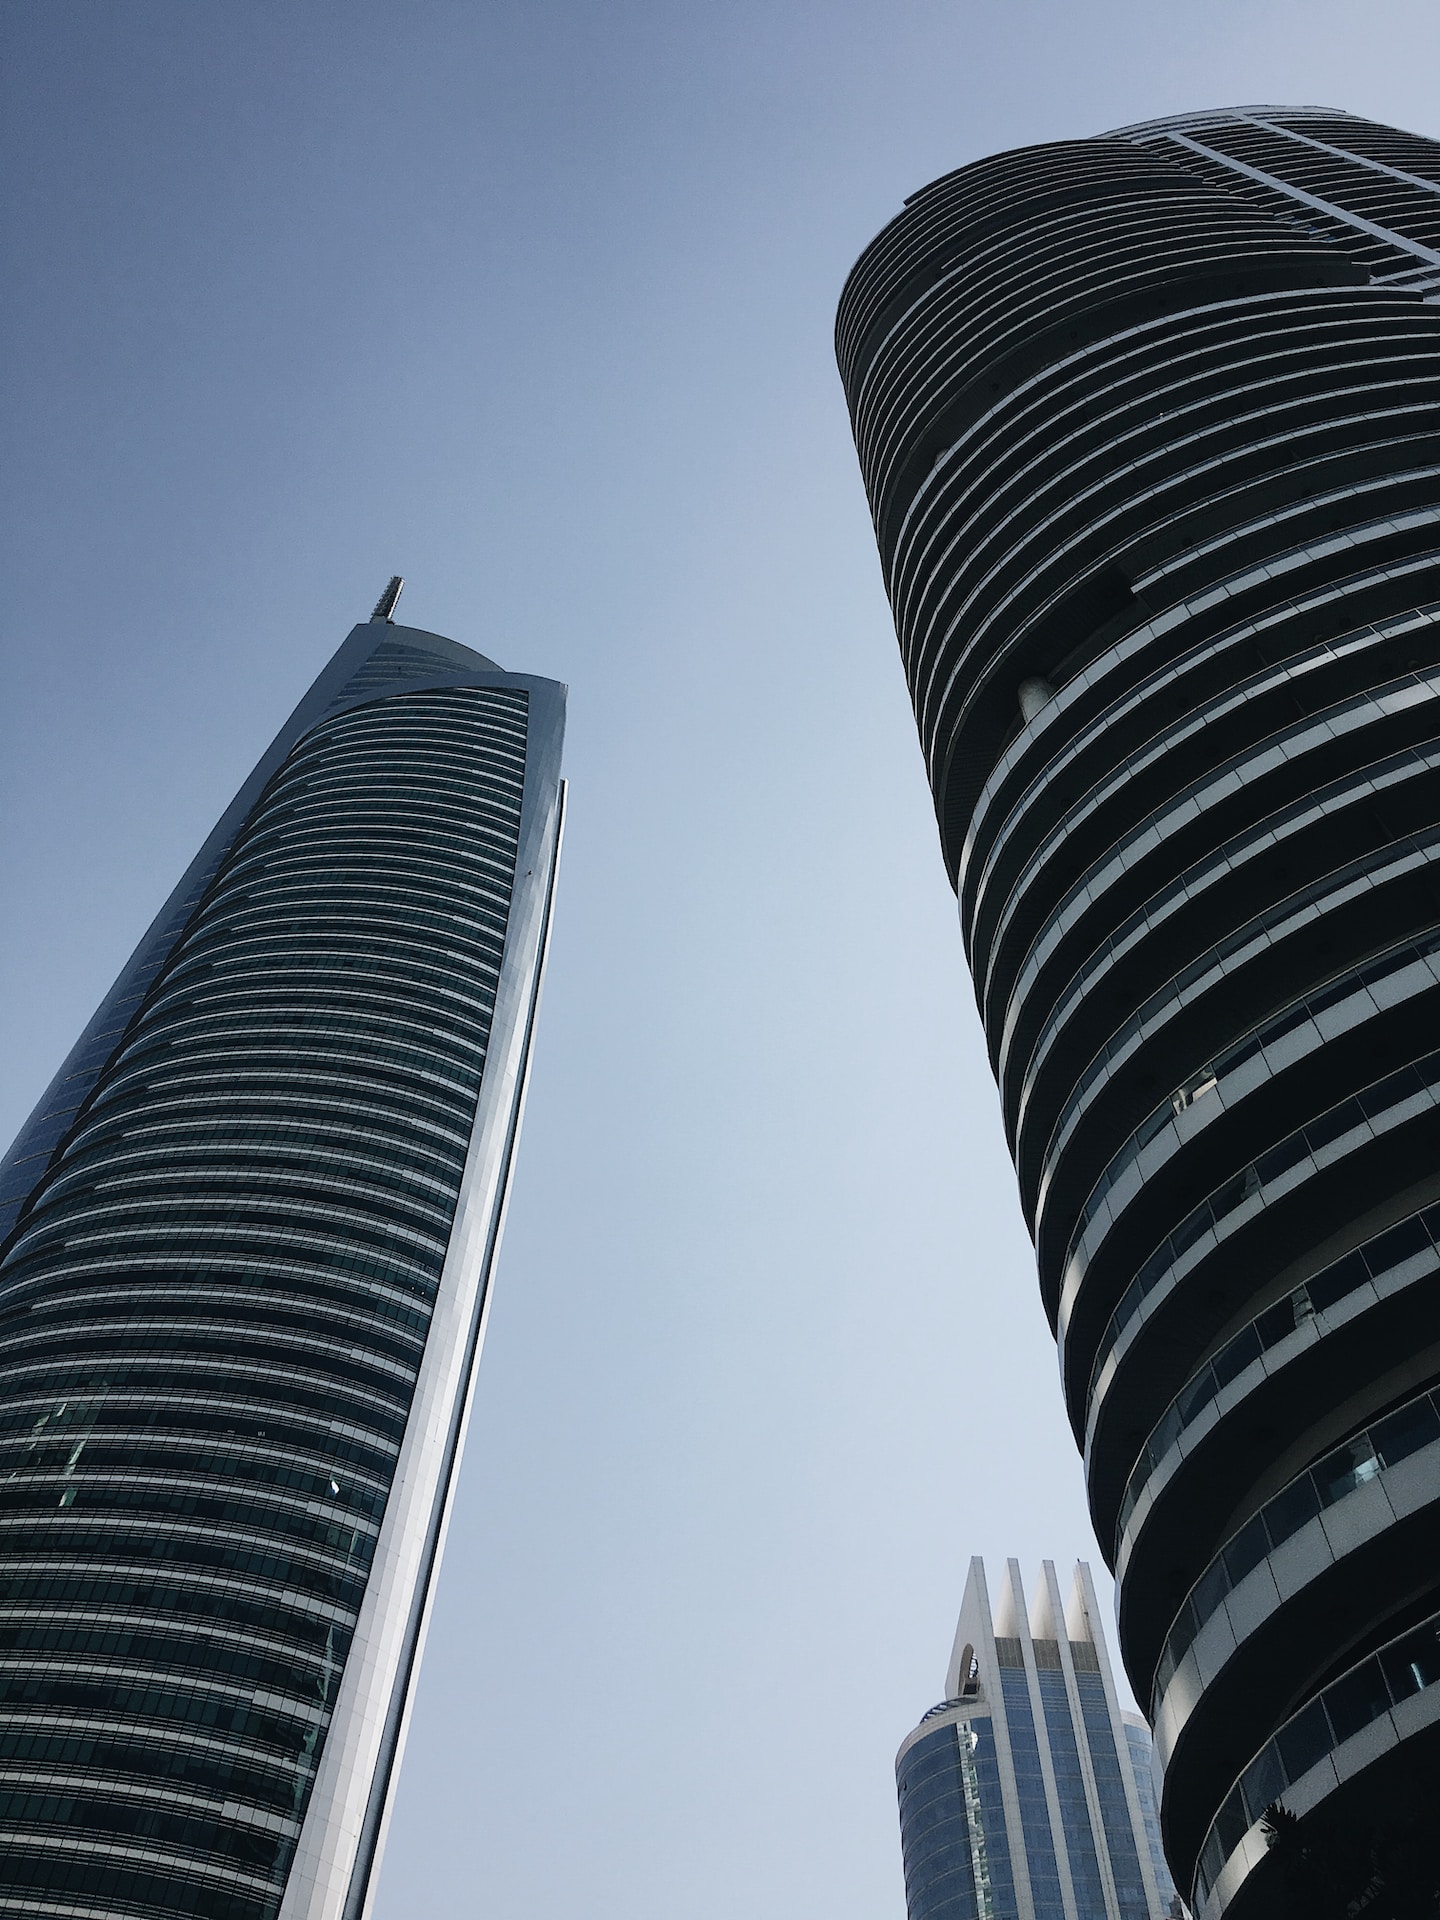 Do real estate agents make a lot in Dubai?